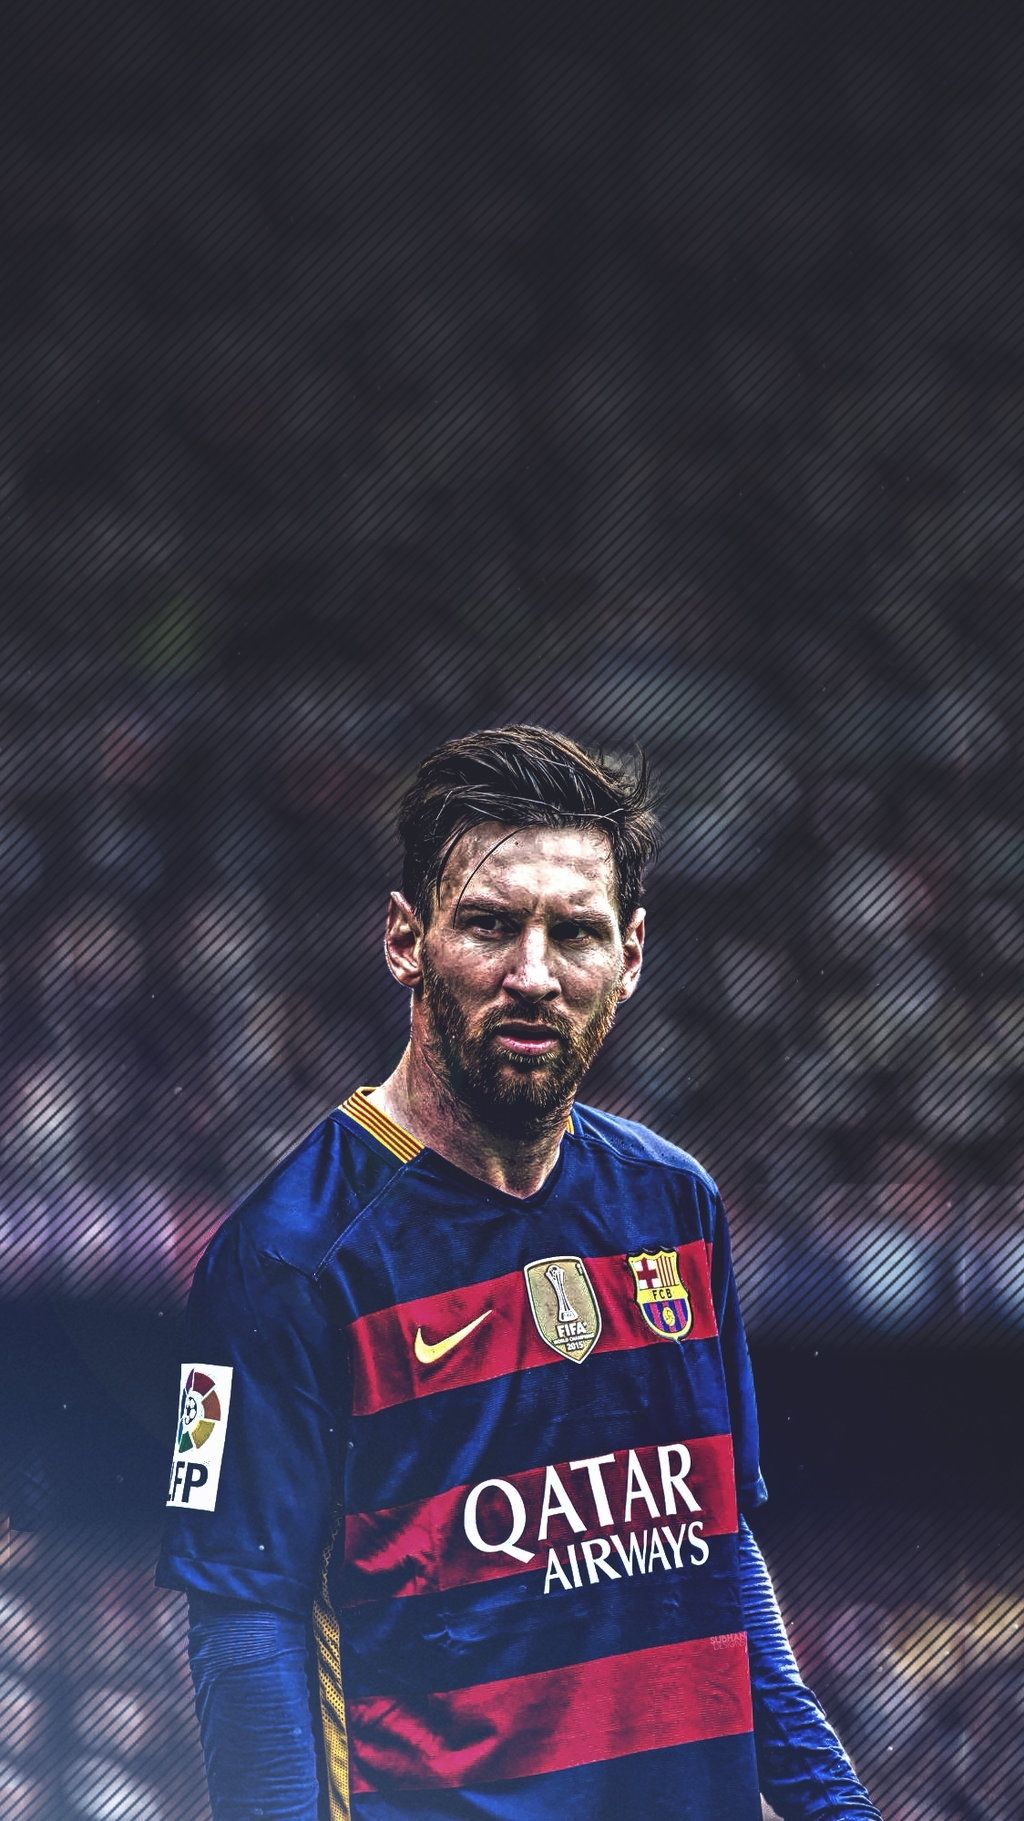 25+] Messi IPhone Wallpapers - WallpaperSafari